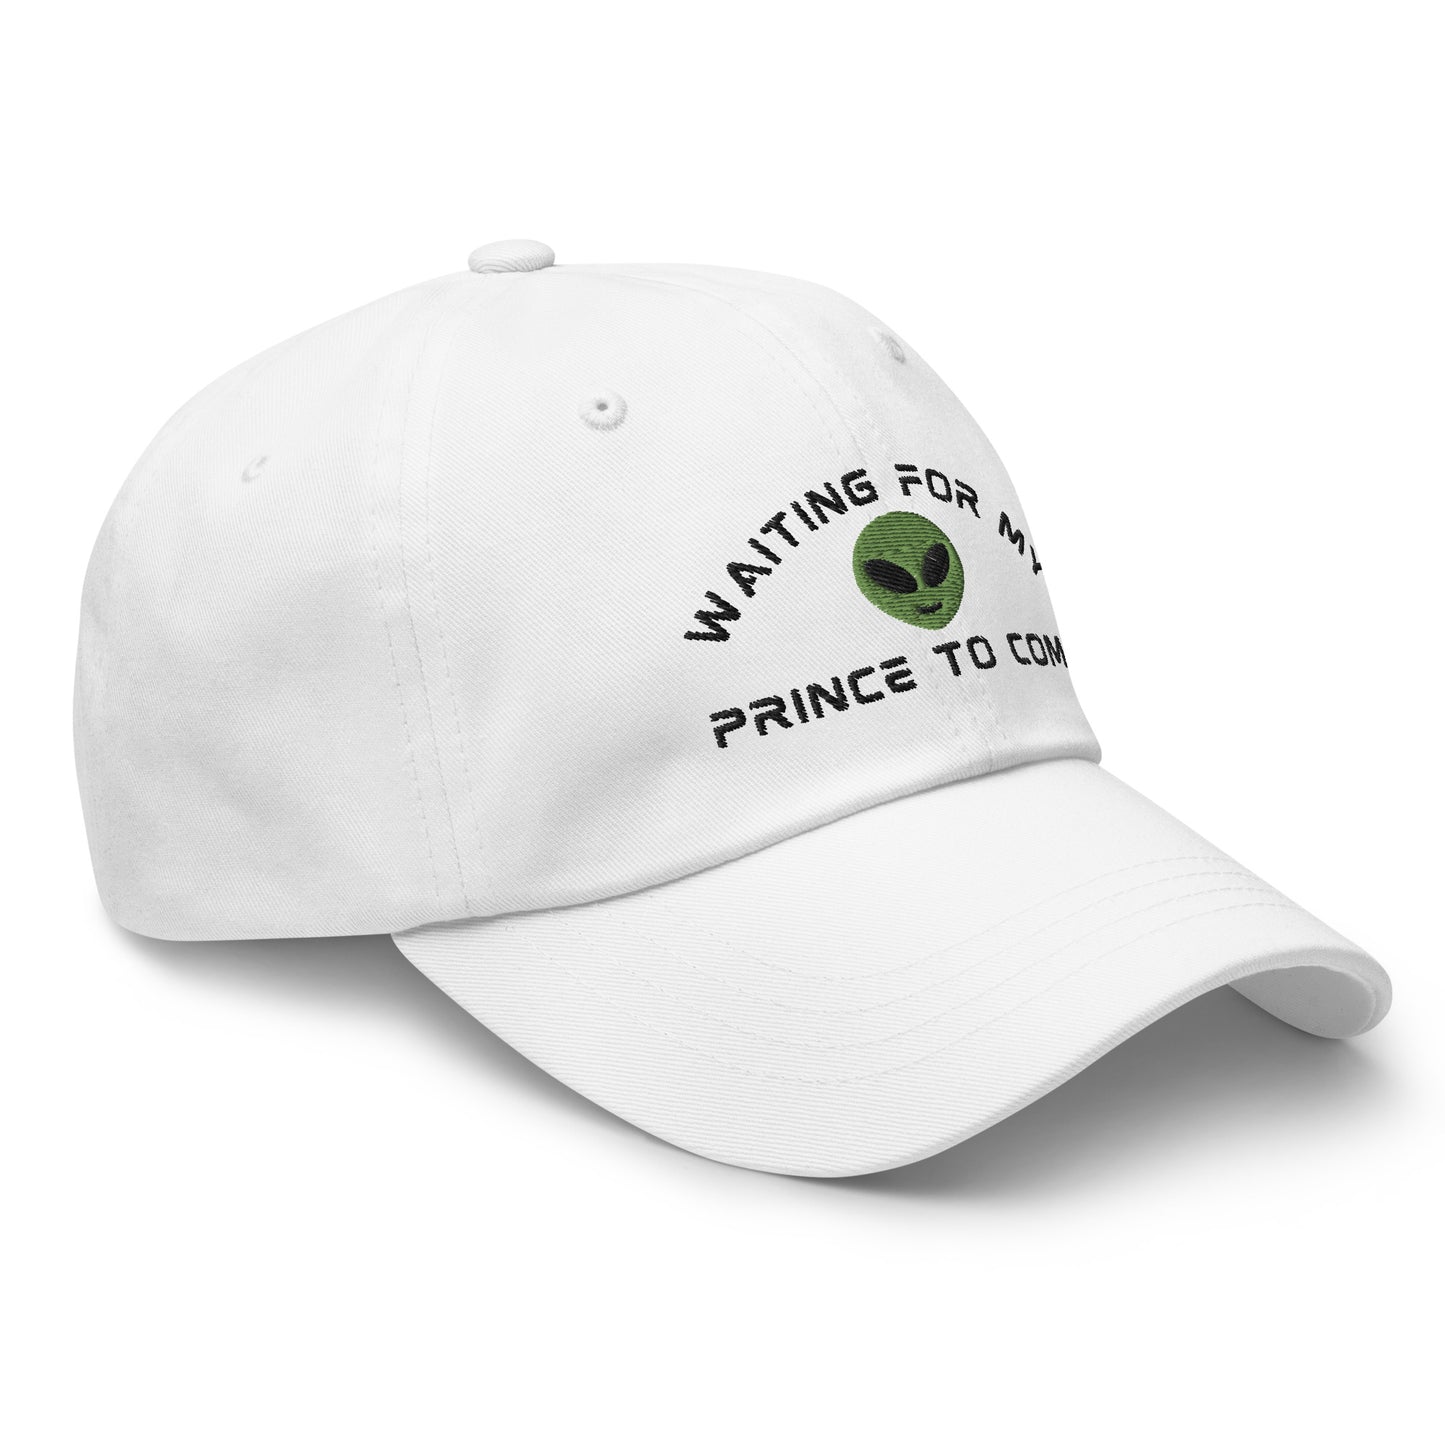 Alien Romance Sci-fi Book Hat “My prince will come” in White